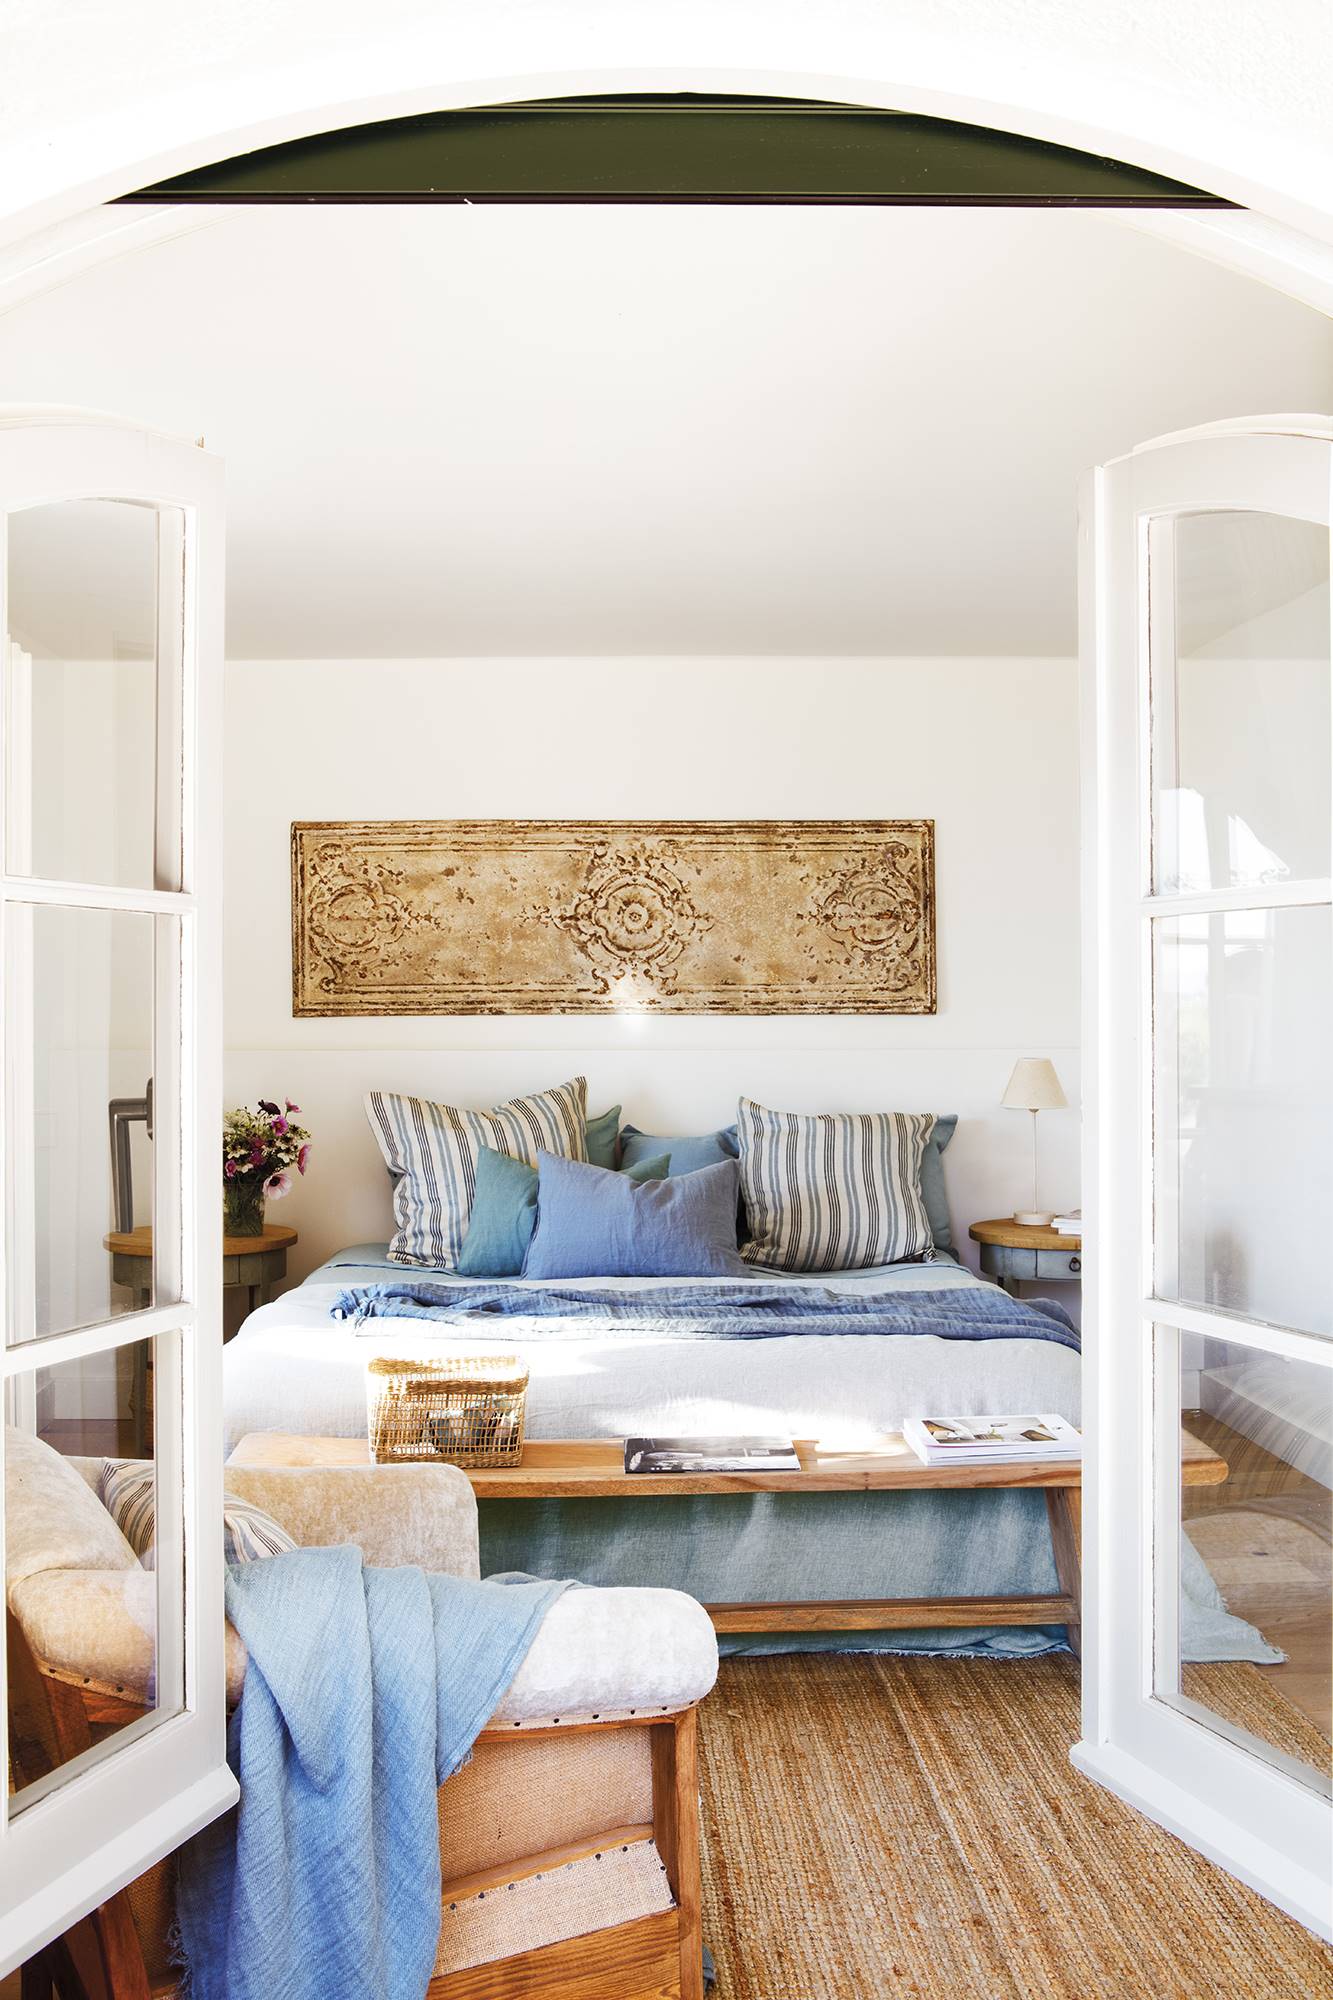 Dormitorio de estilo mediterráneo con ropa de cama azul y blanca. 